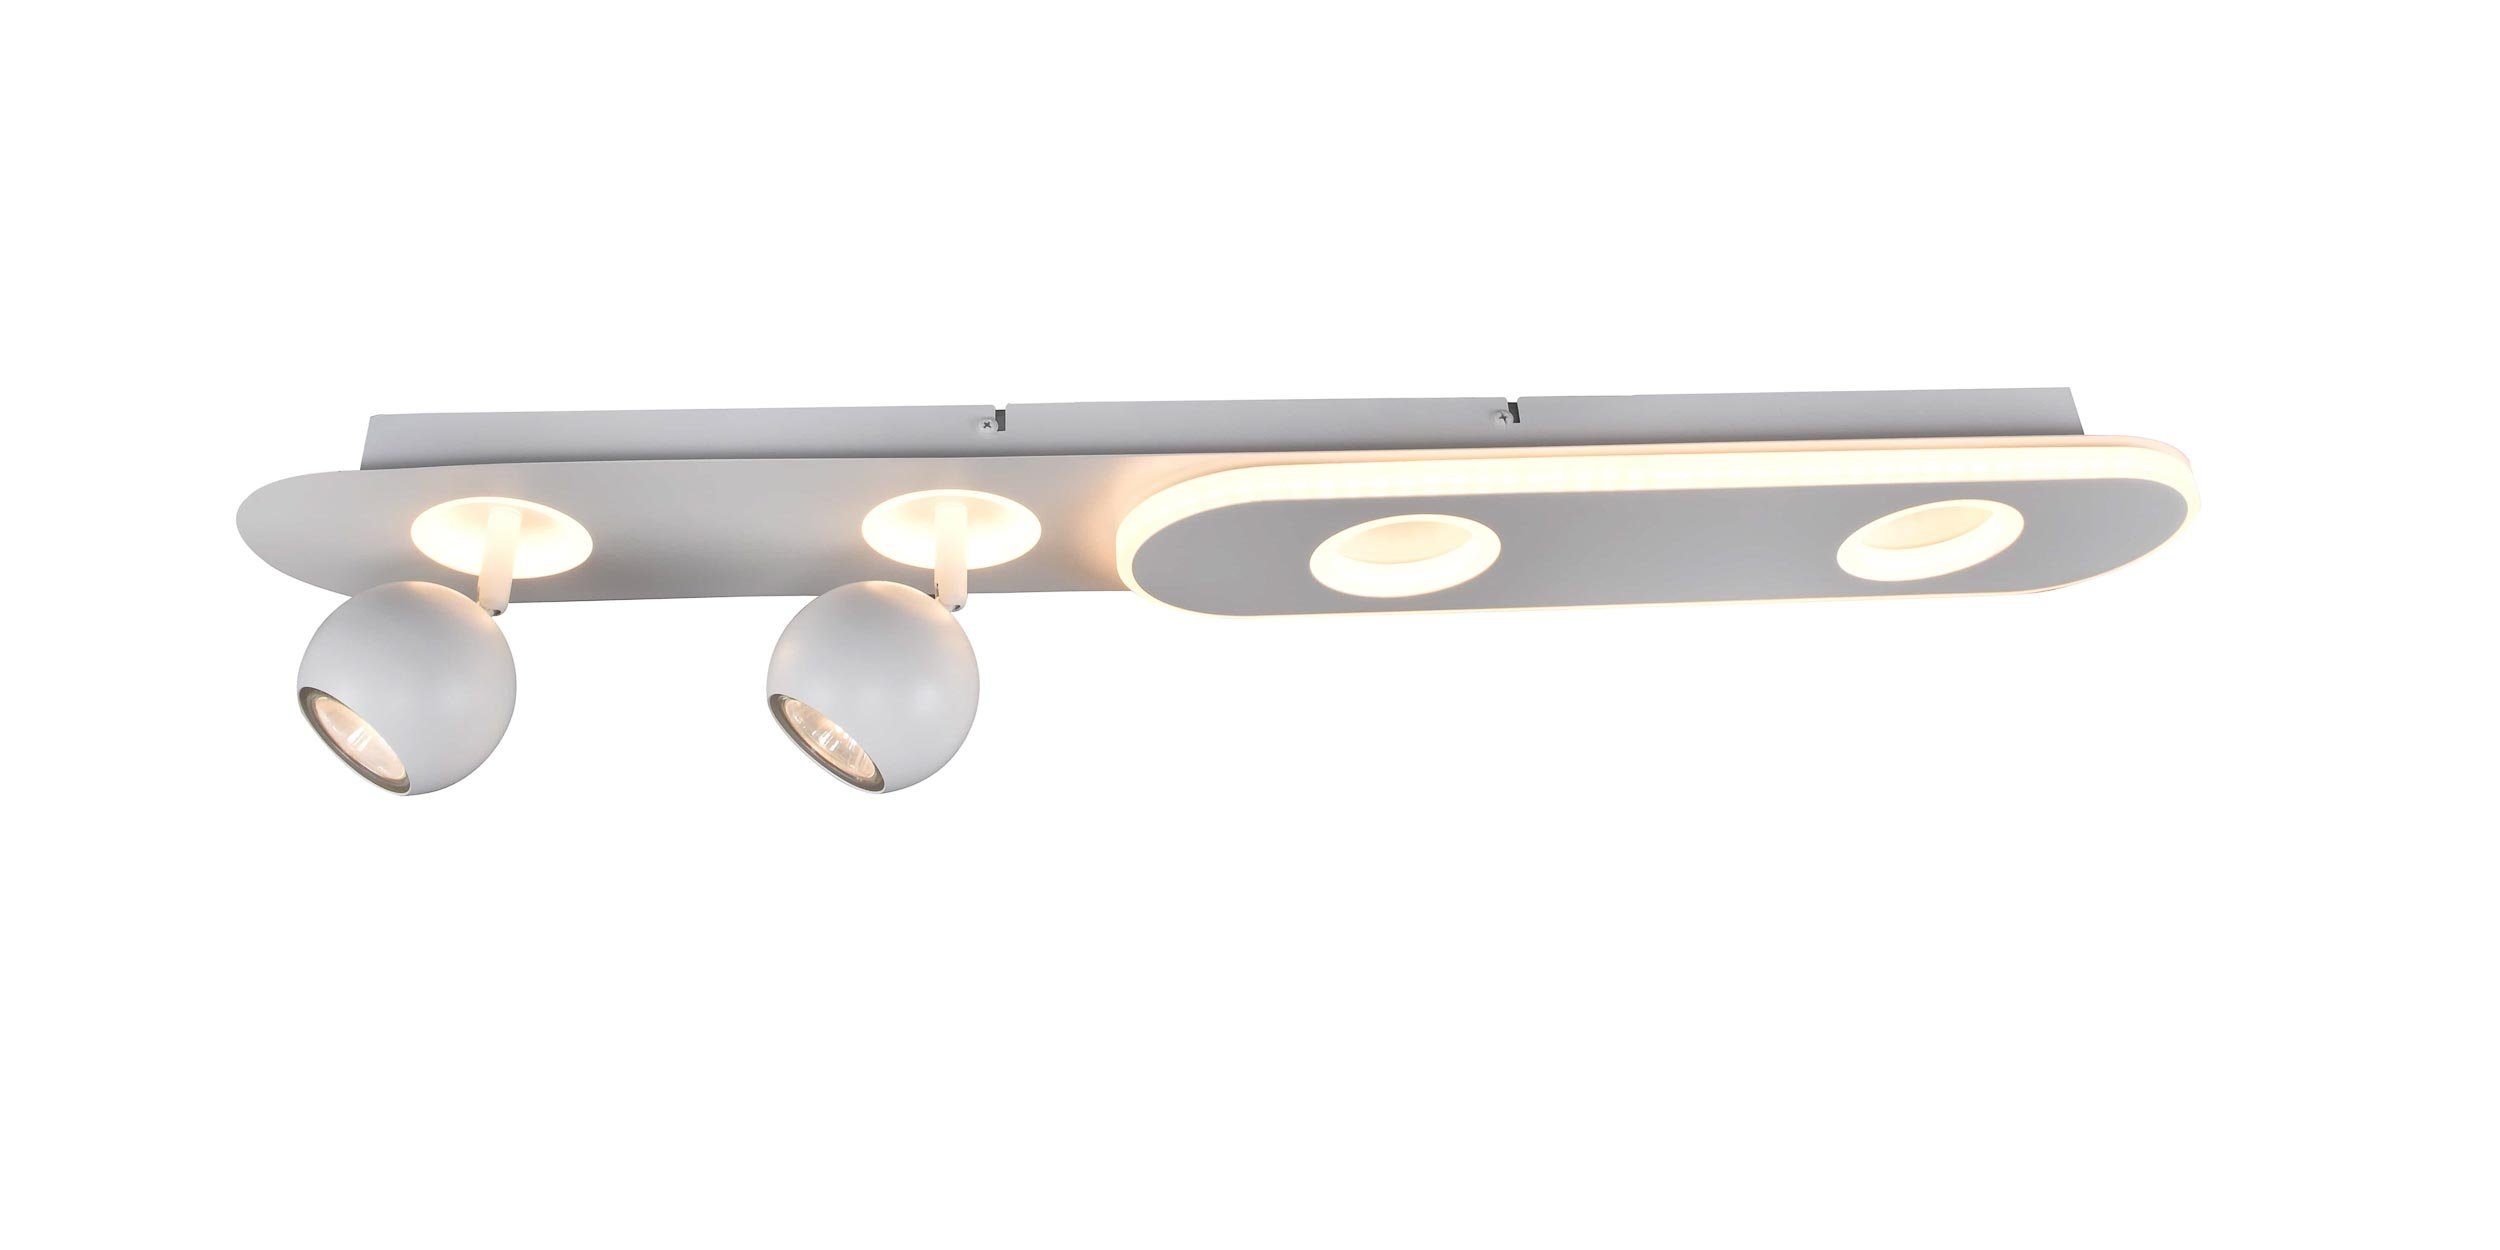 5W PAR51, 2x fü weiß, Lampe, LED geeignet GU10, Irelia Irelia, Brilliant 4flg Deckenleuchte Spotbalken